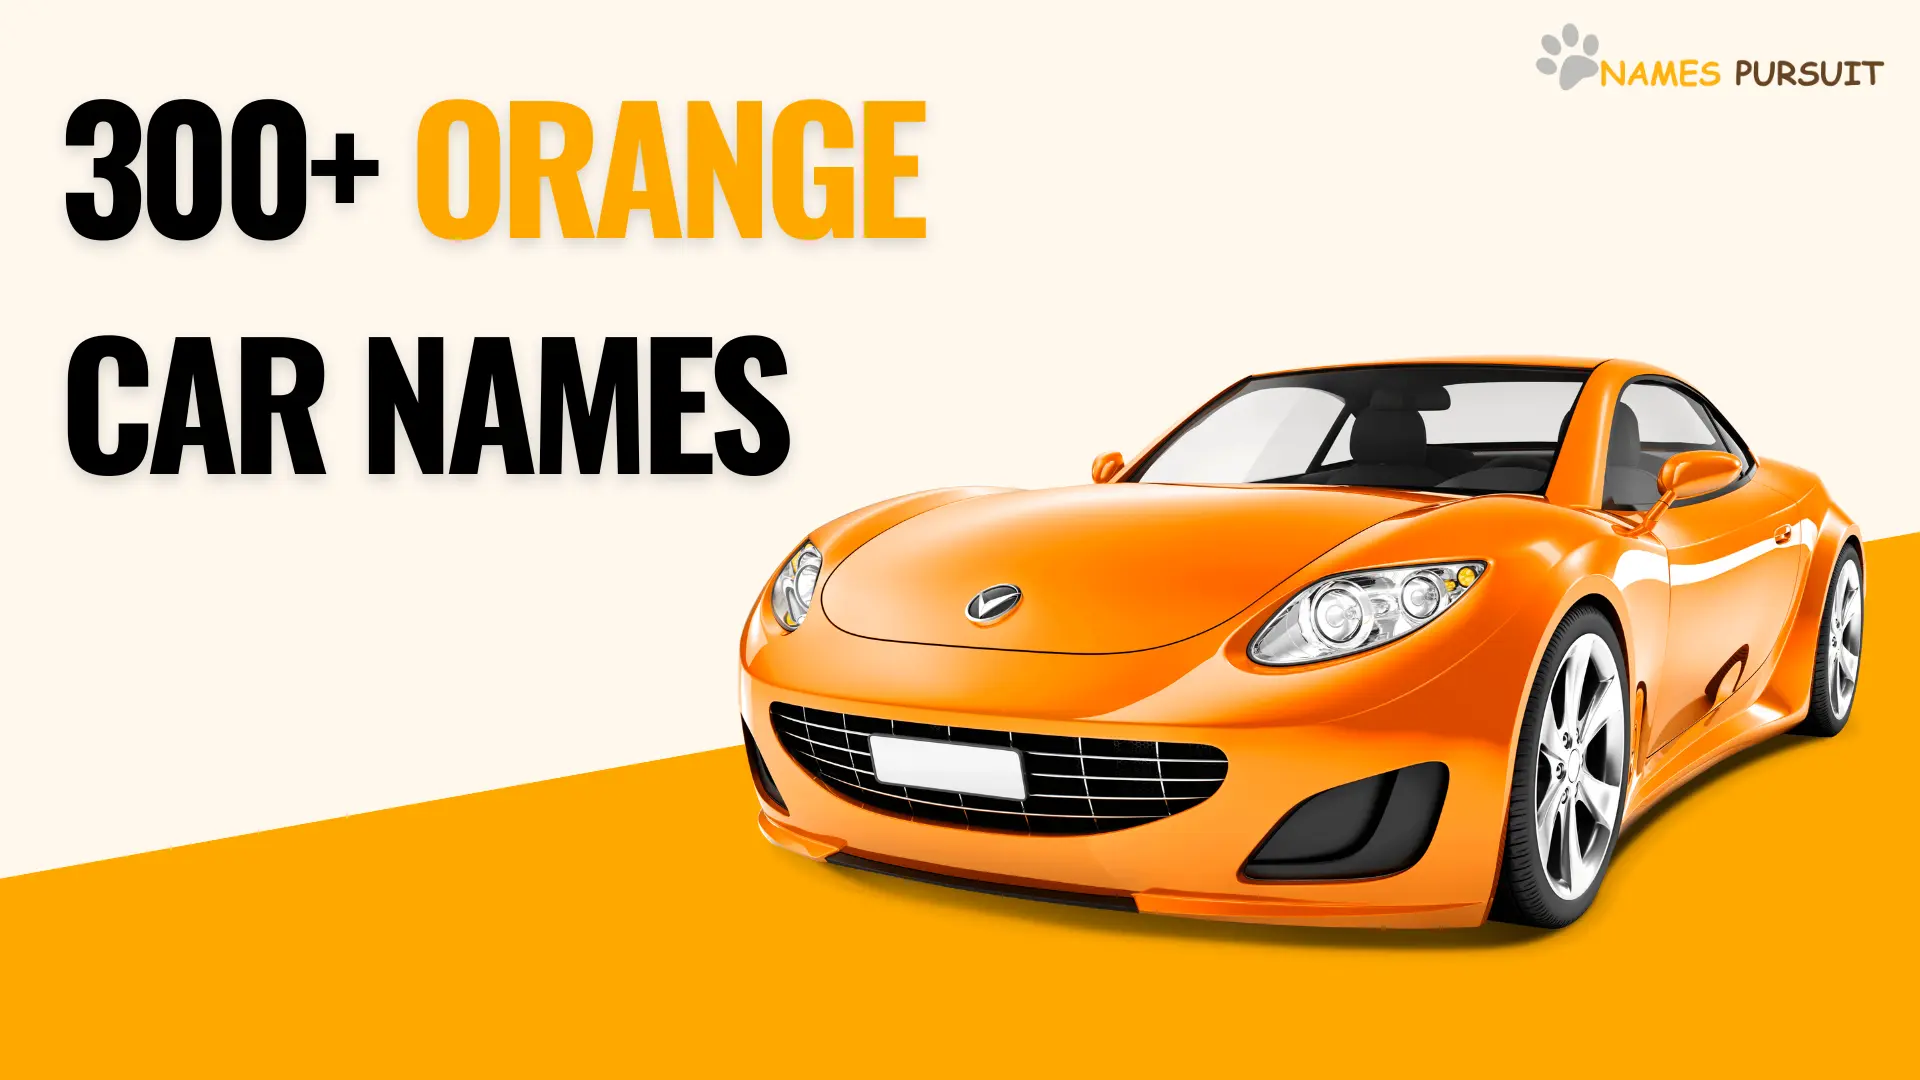 300+ Orange Car Names- names pursuit